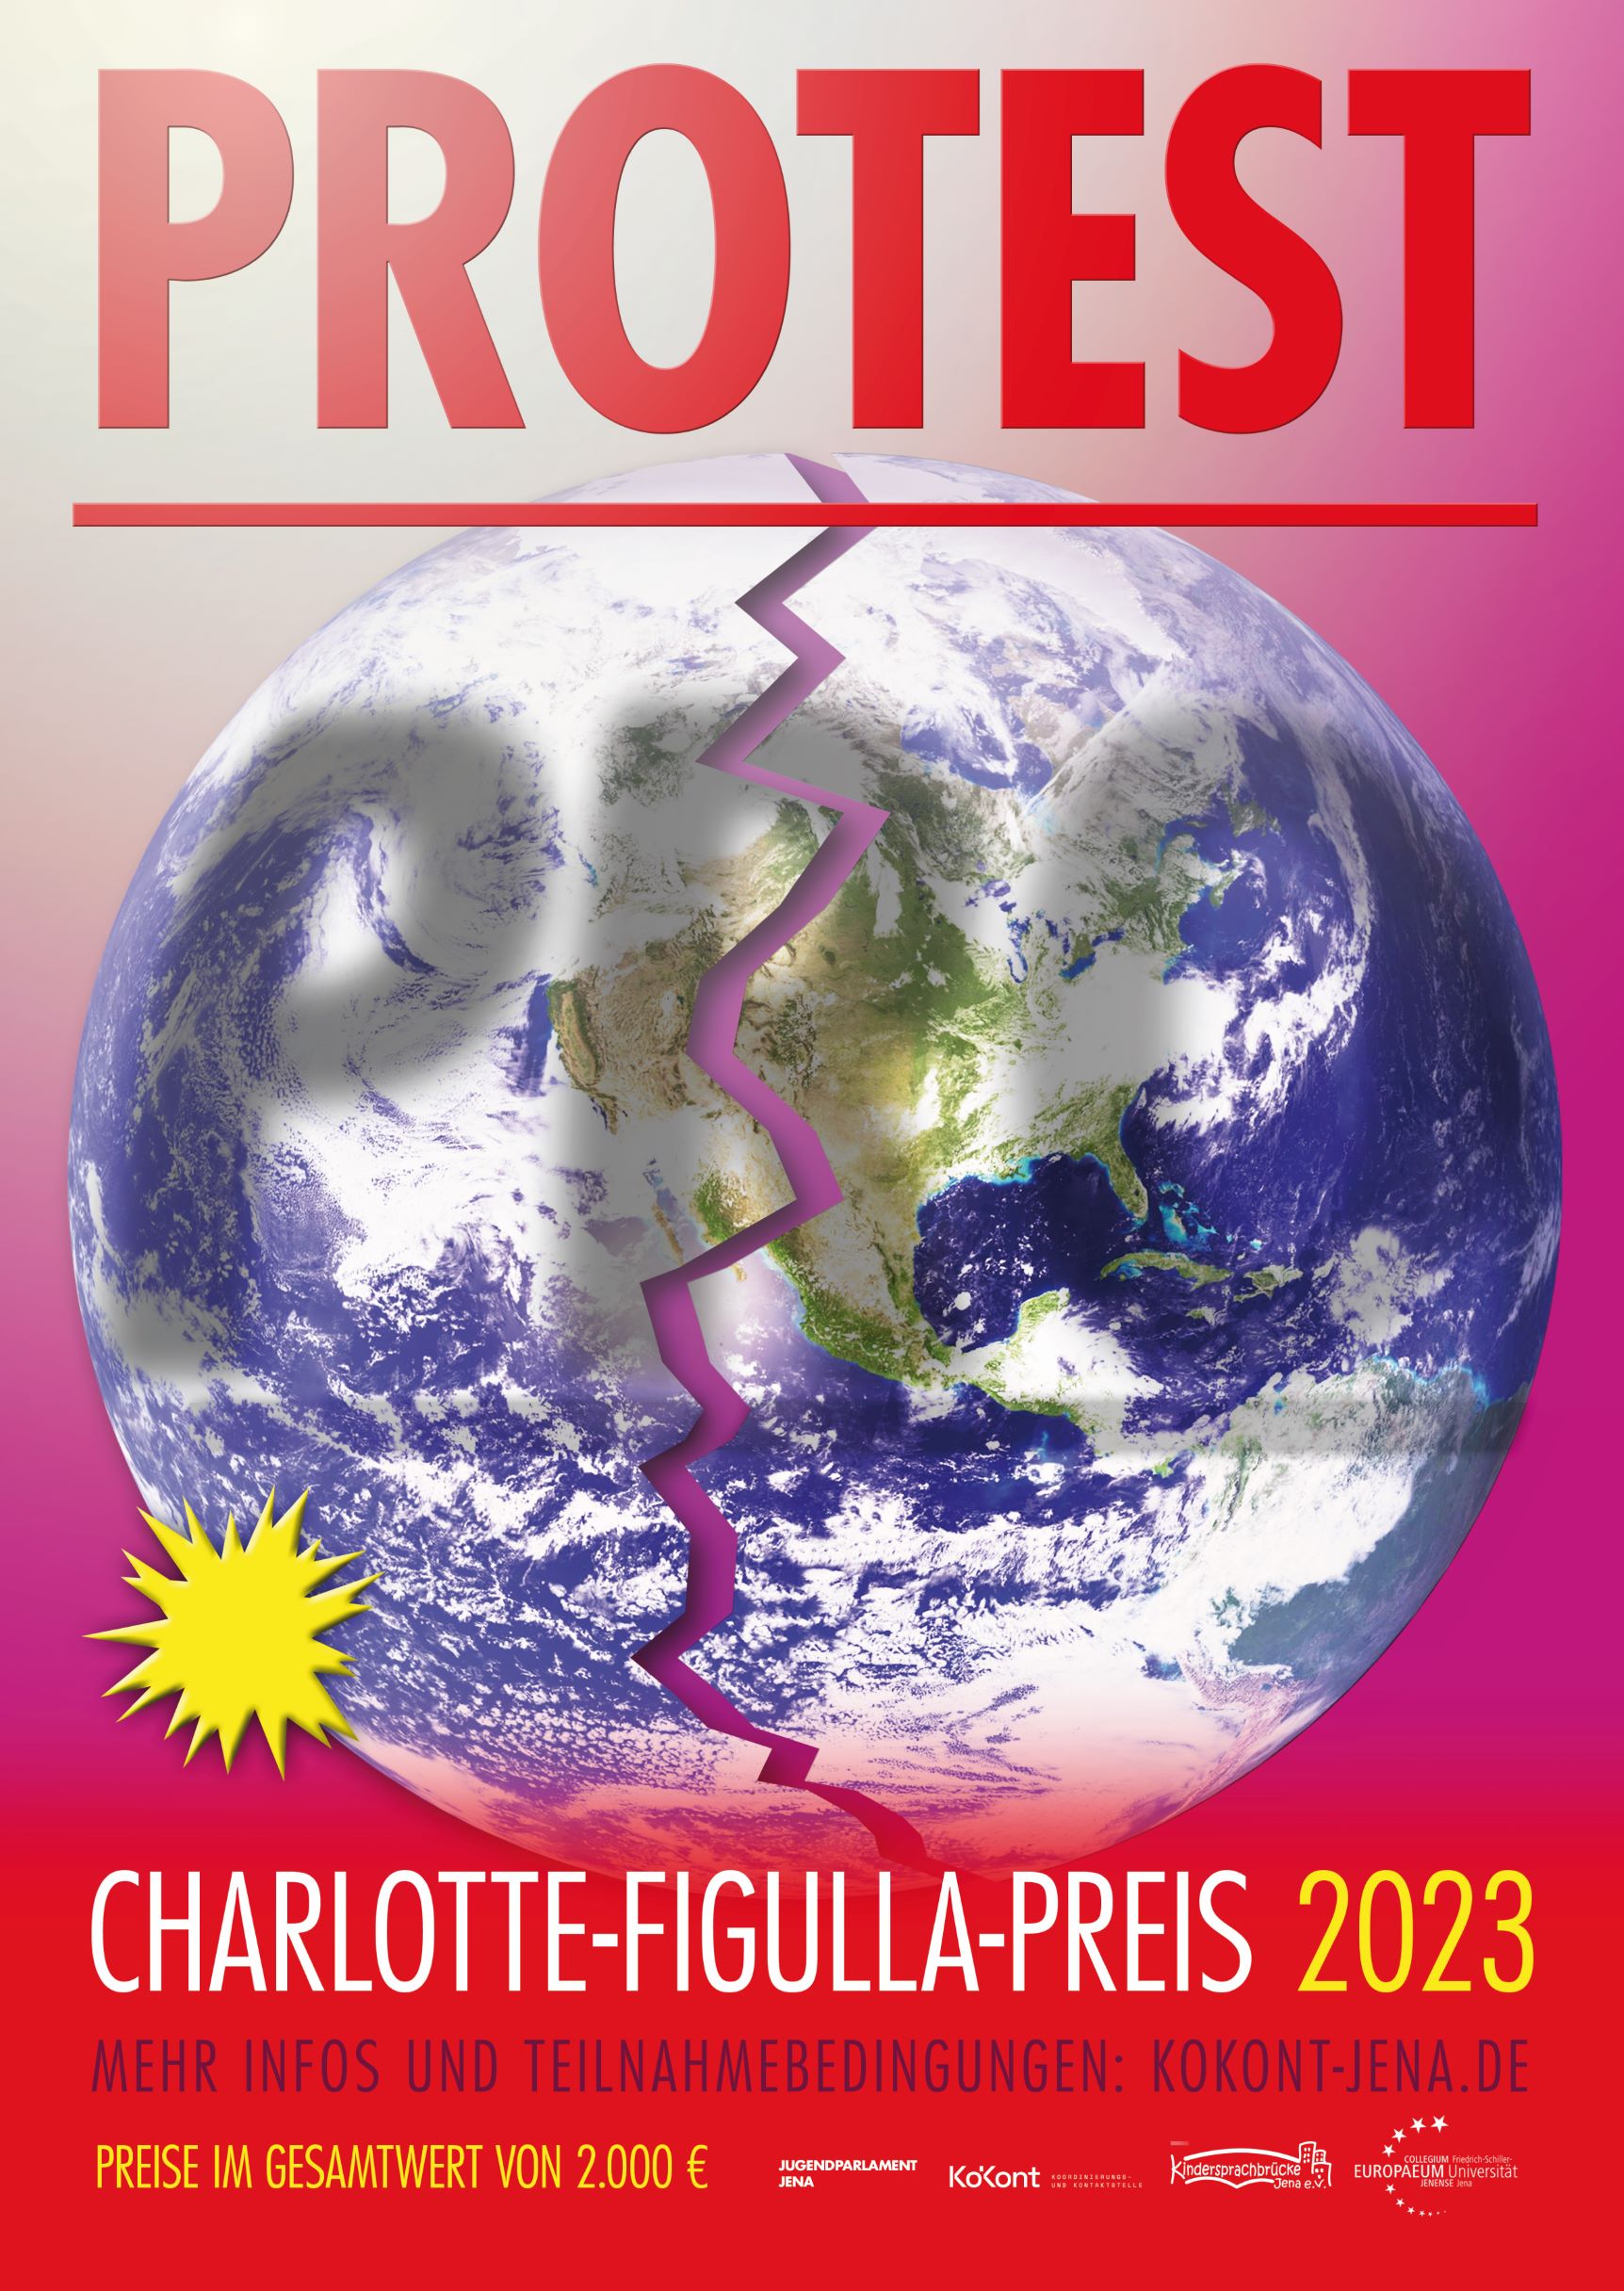 Schüler*innen und Jugendwettbewerb Charlotte-Figulla-Preis 2023 – PROTEST